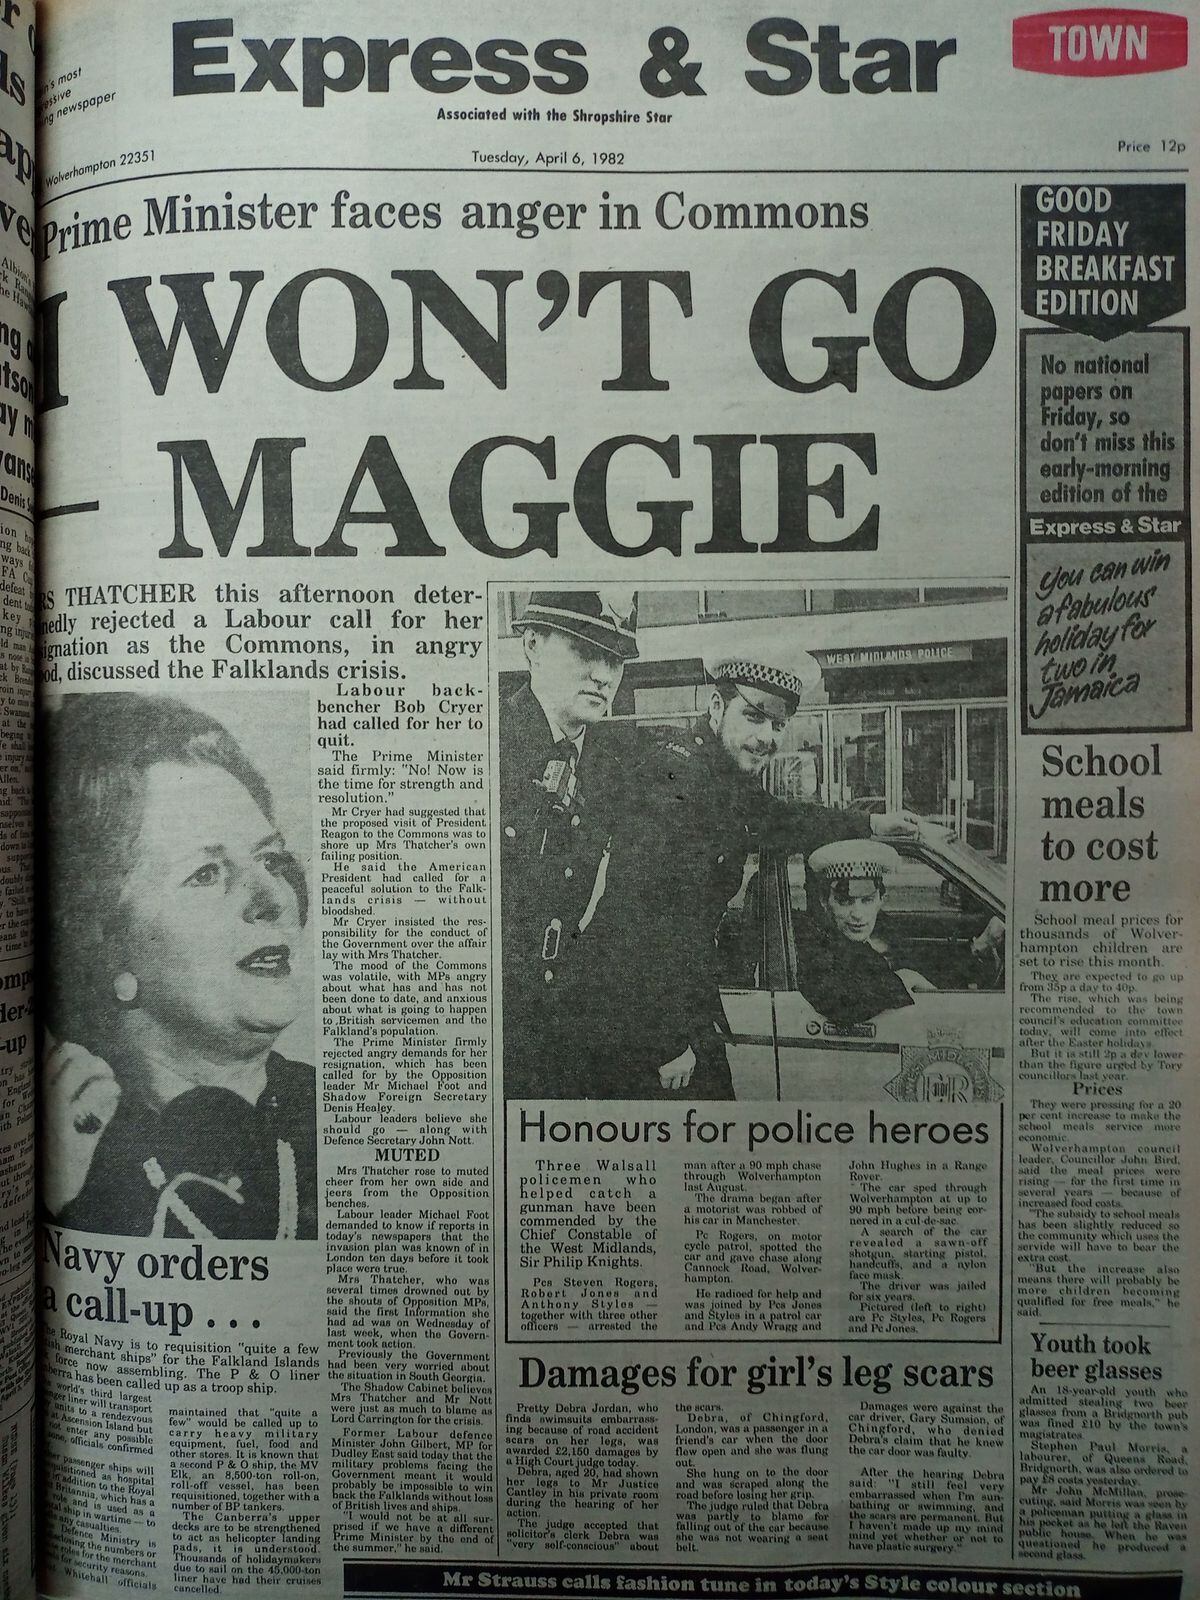 Mrs Thatcher was under pressure following the invasion